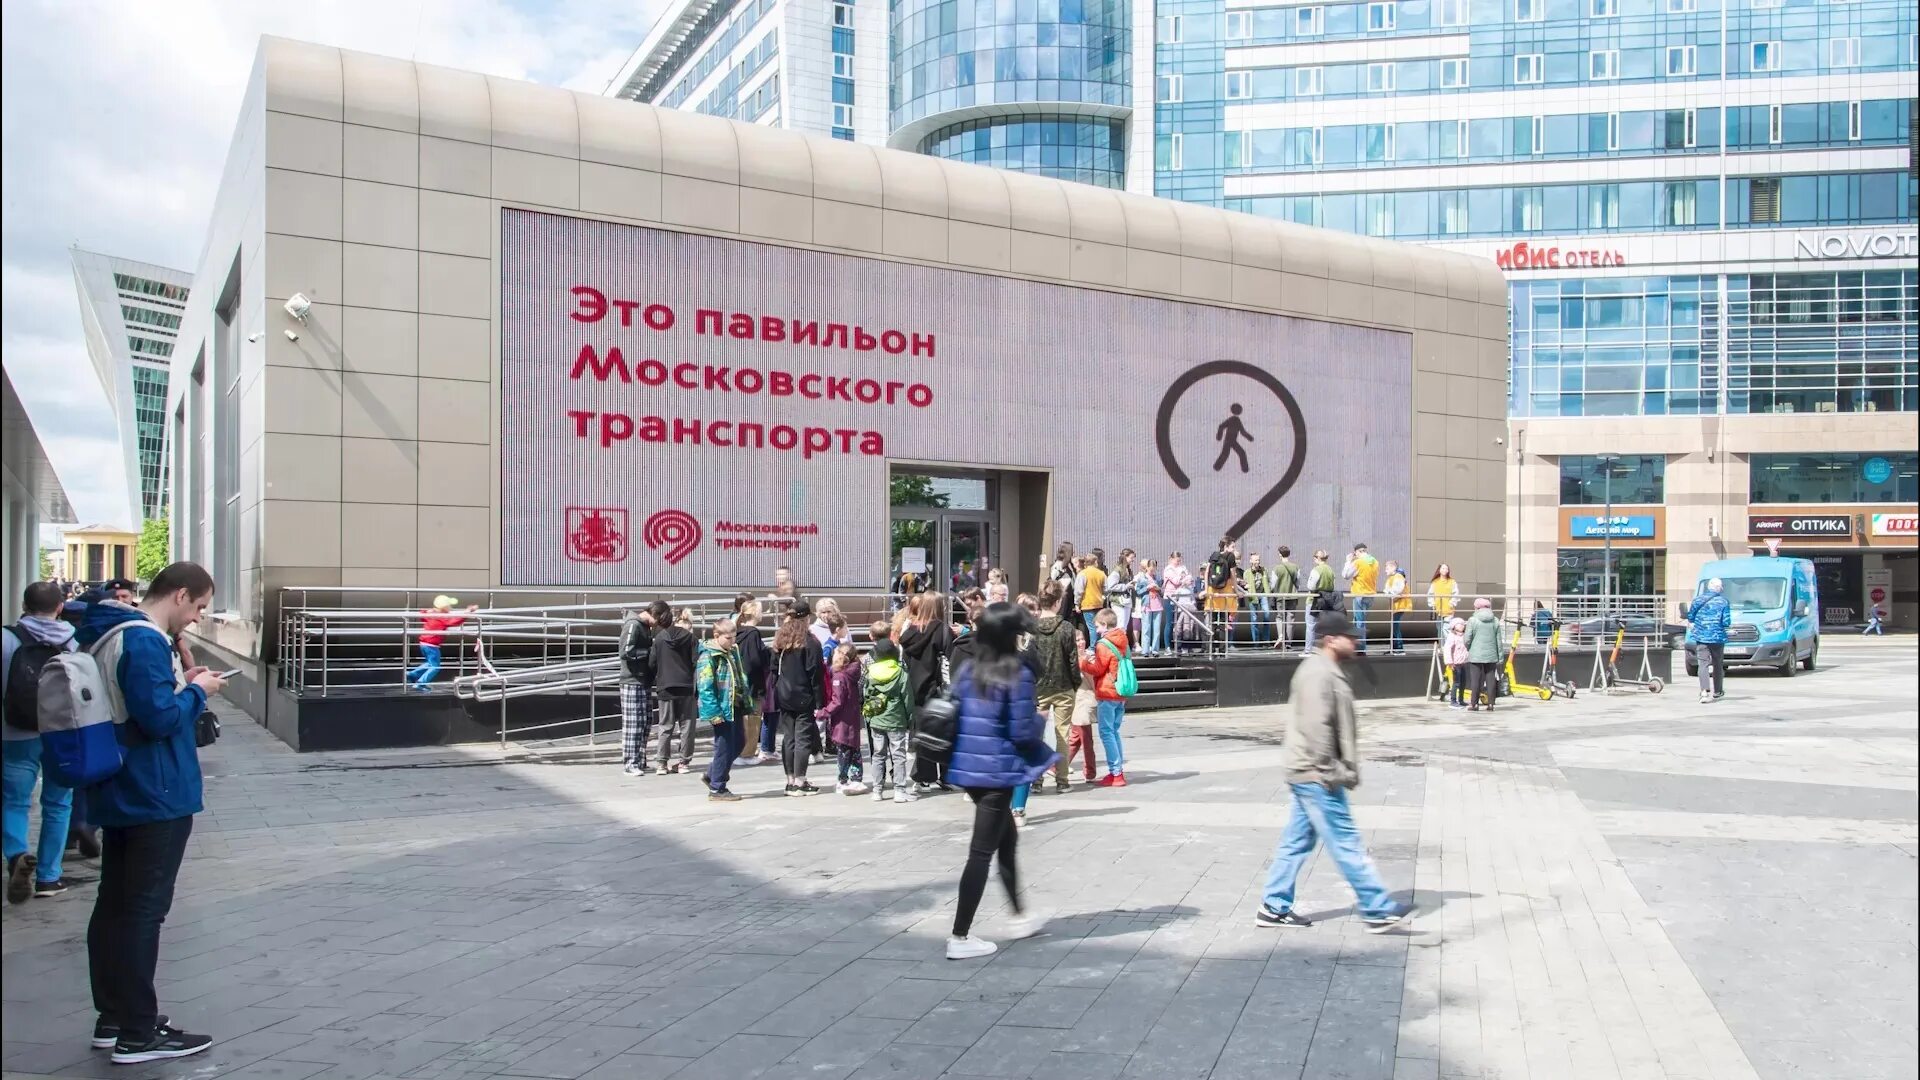 Площадь киевского вокзала павильон московского транспорта